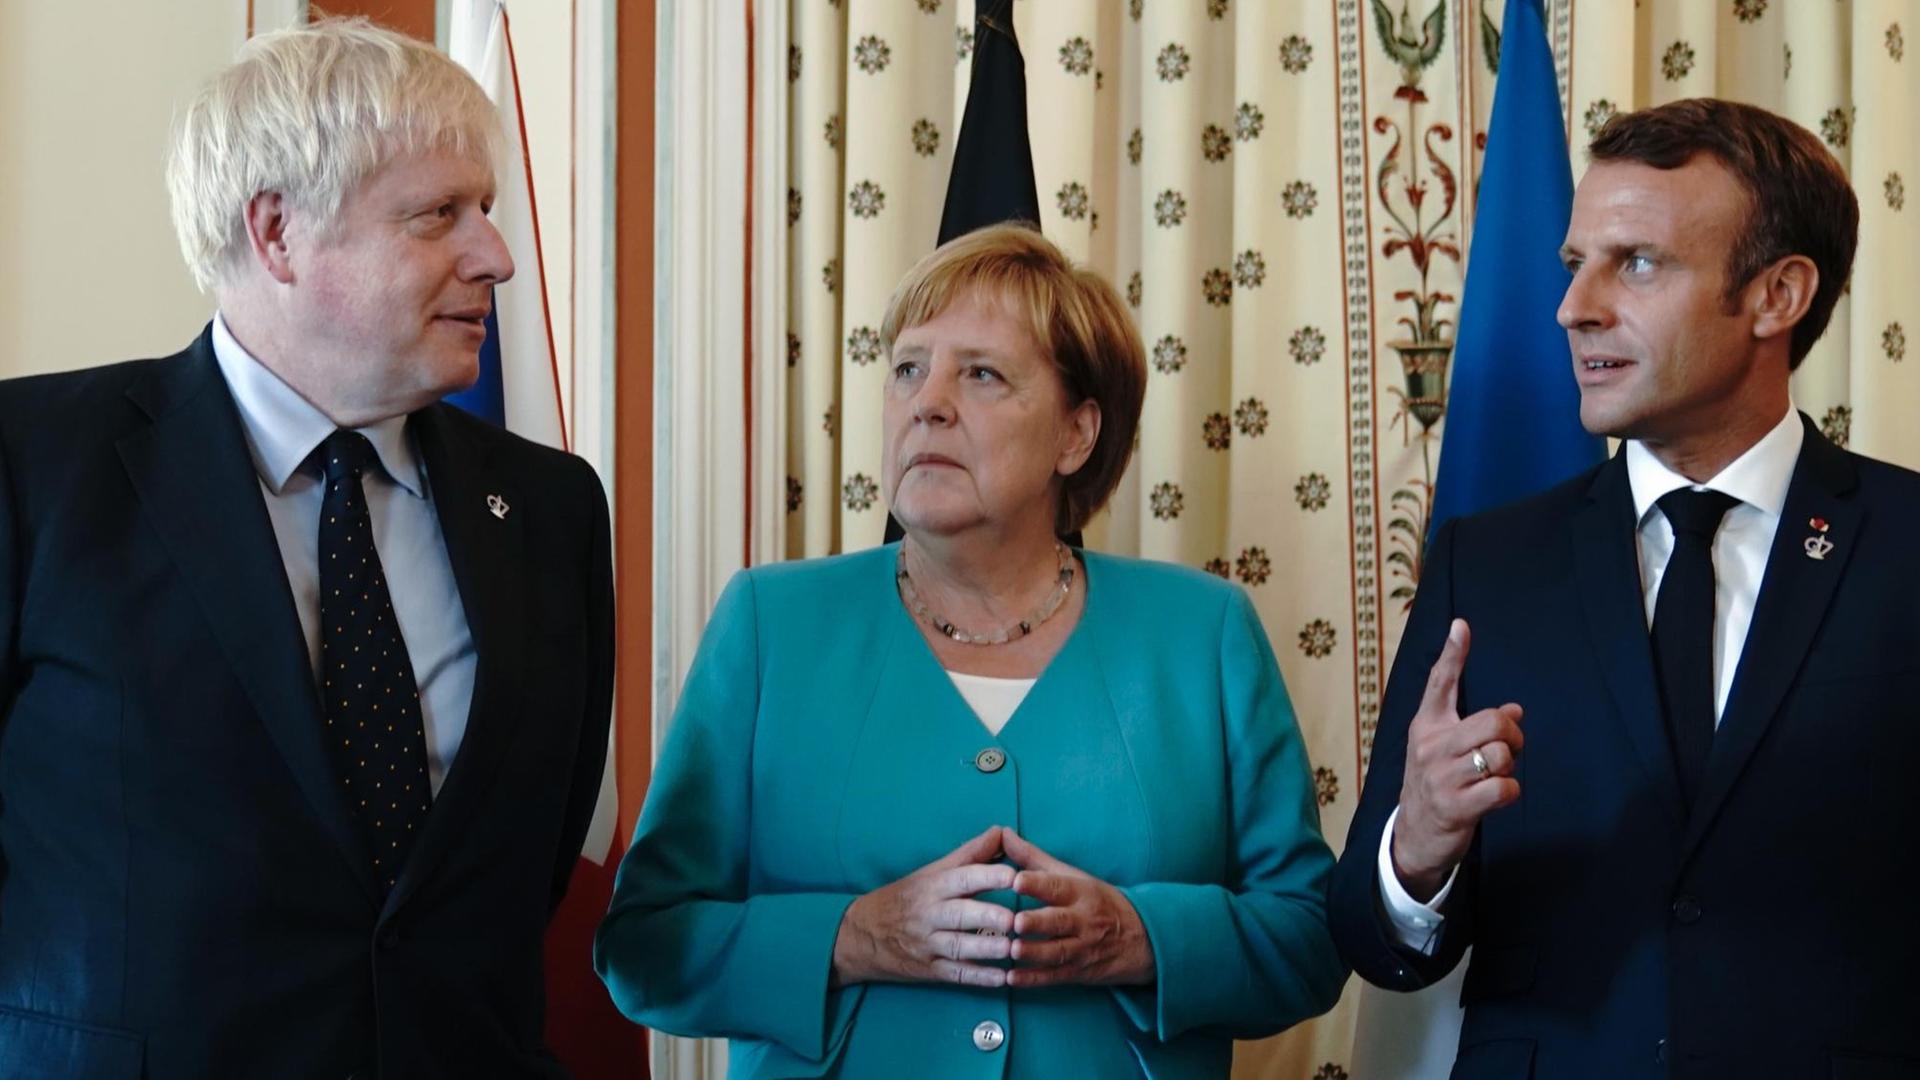 24.08.2019, Frankreich, Biarritz: Bundeskanzlerin Angela Merkel (CDU), steht zwischen Boris Johnson (l), Premierminister von Großbritannien, und Emmanuel Macron, Präsident von Frankreich